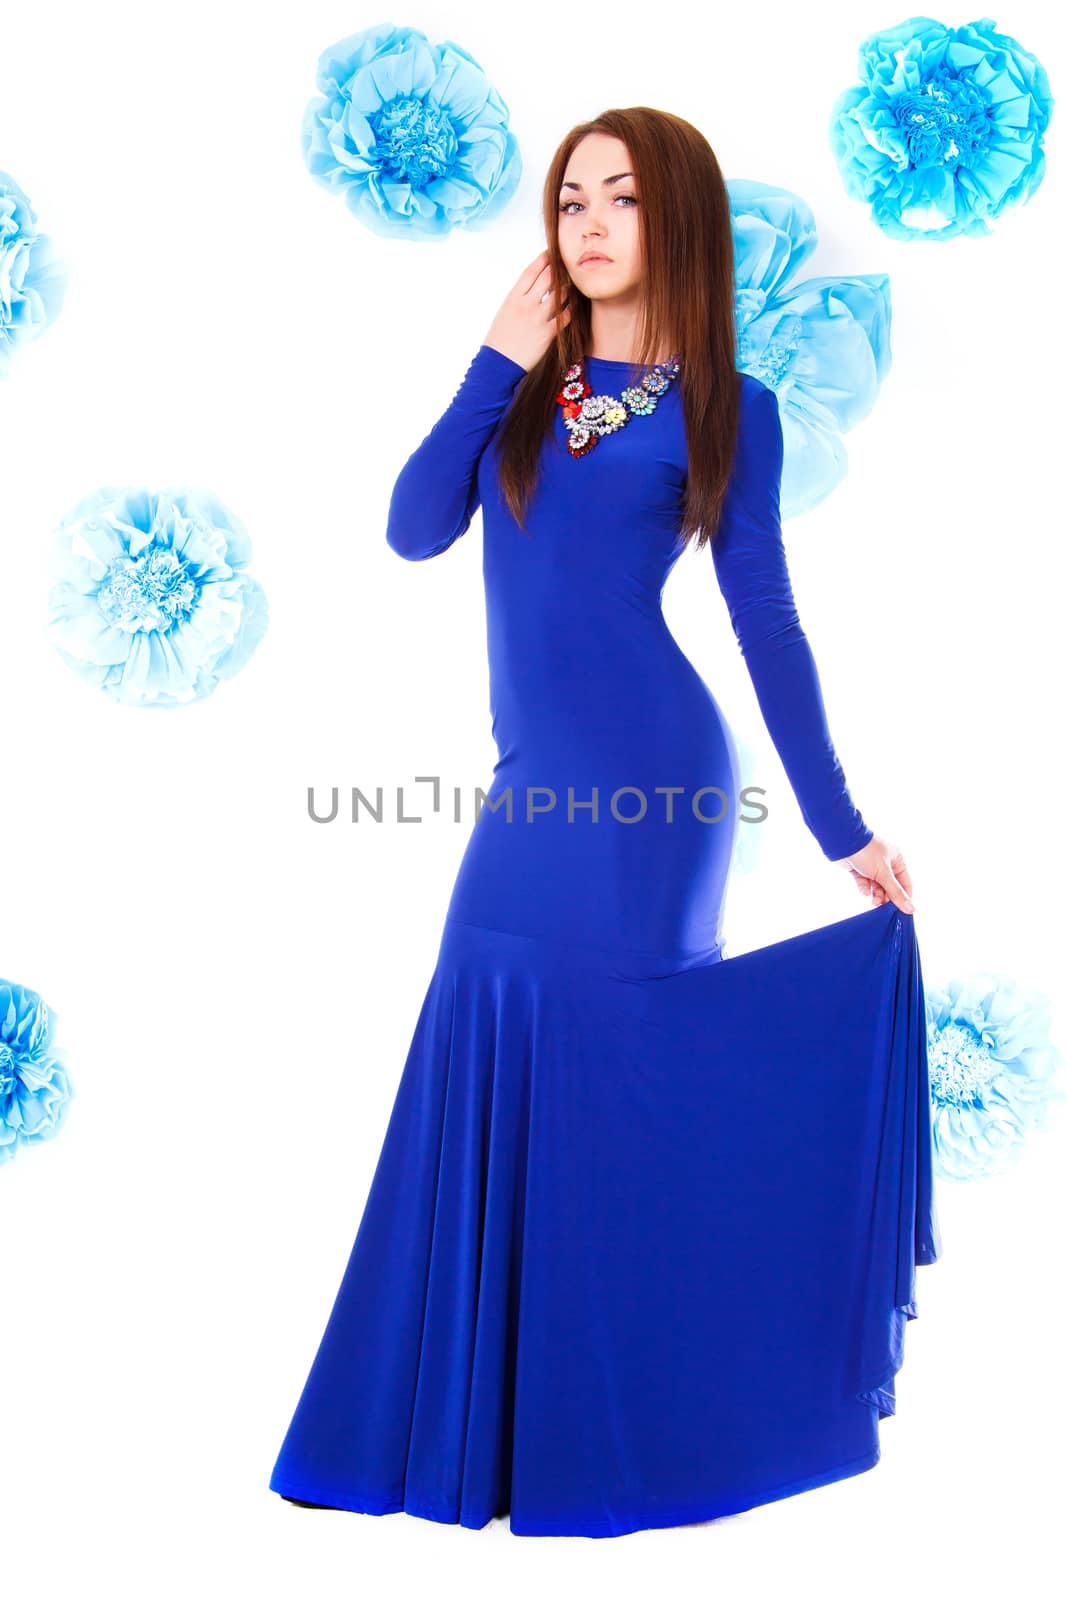 Beautiful young woman in a long blue evening dress by Artzzz